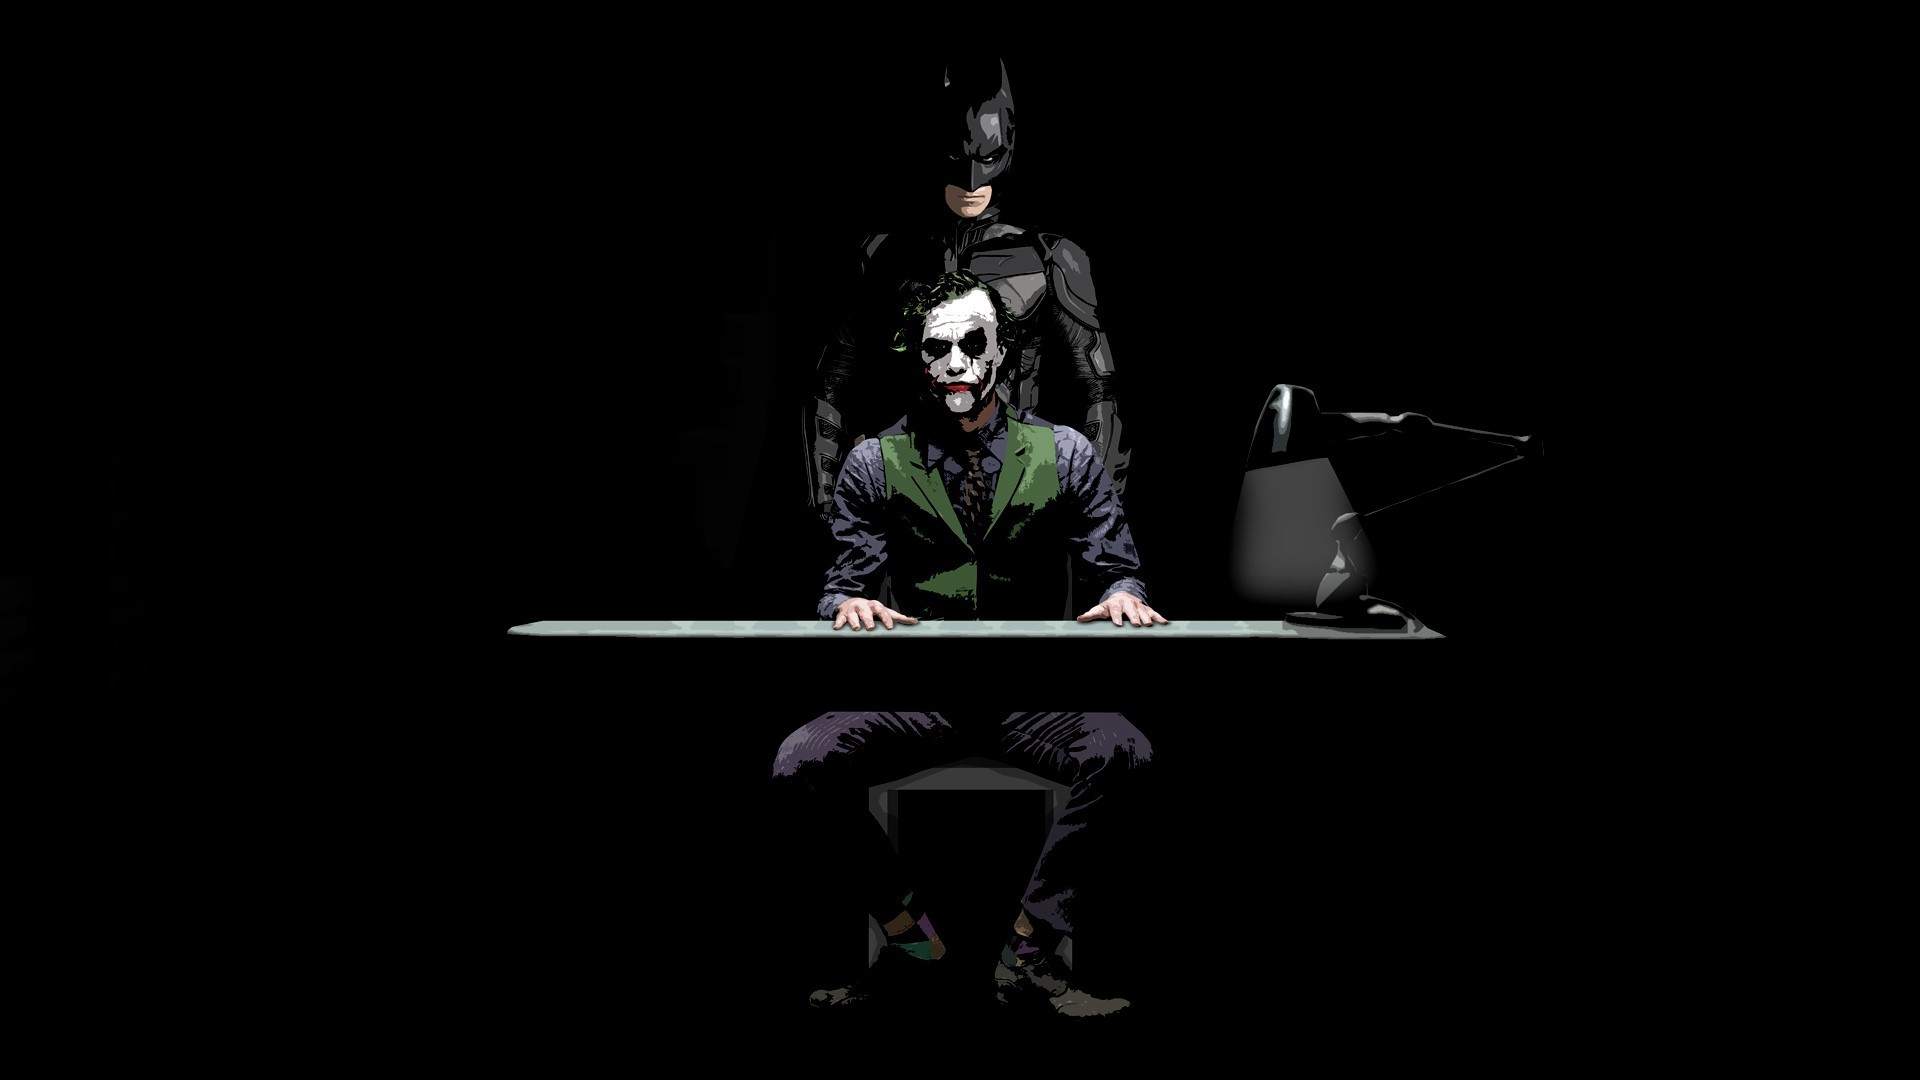 Dark Knight Joker Wallpaper Full HD Flip